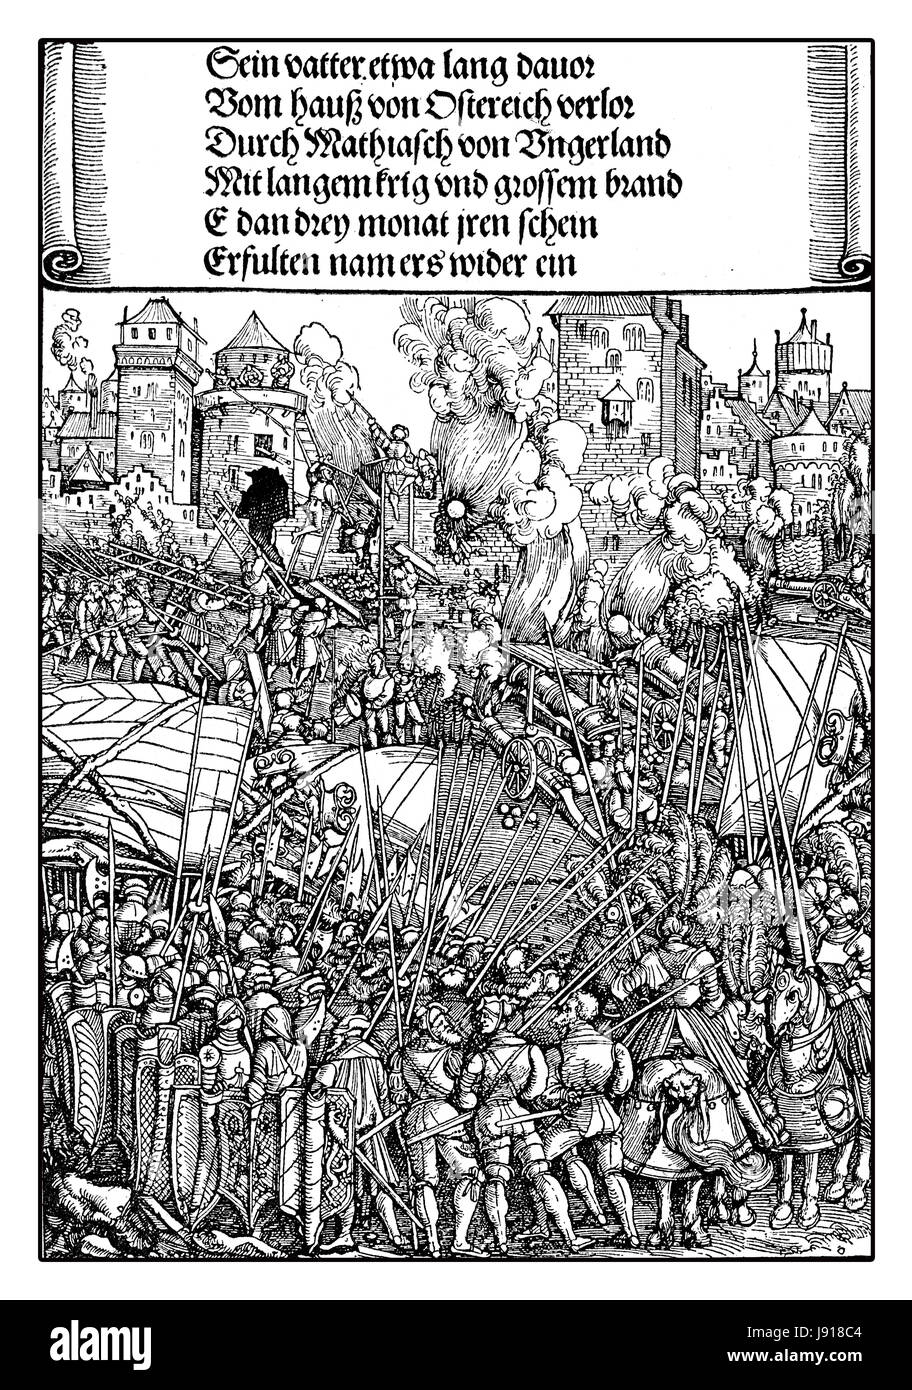 Belagerung und Zerstörung einer Stadt unter Holy Roman Emperor Maximilian I, von Albrecht Dürer, XVI. Jh. Stockfoto